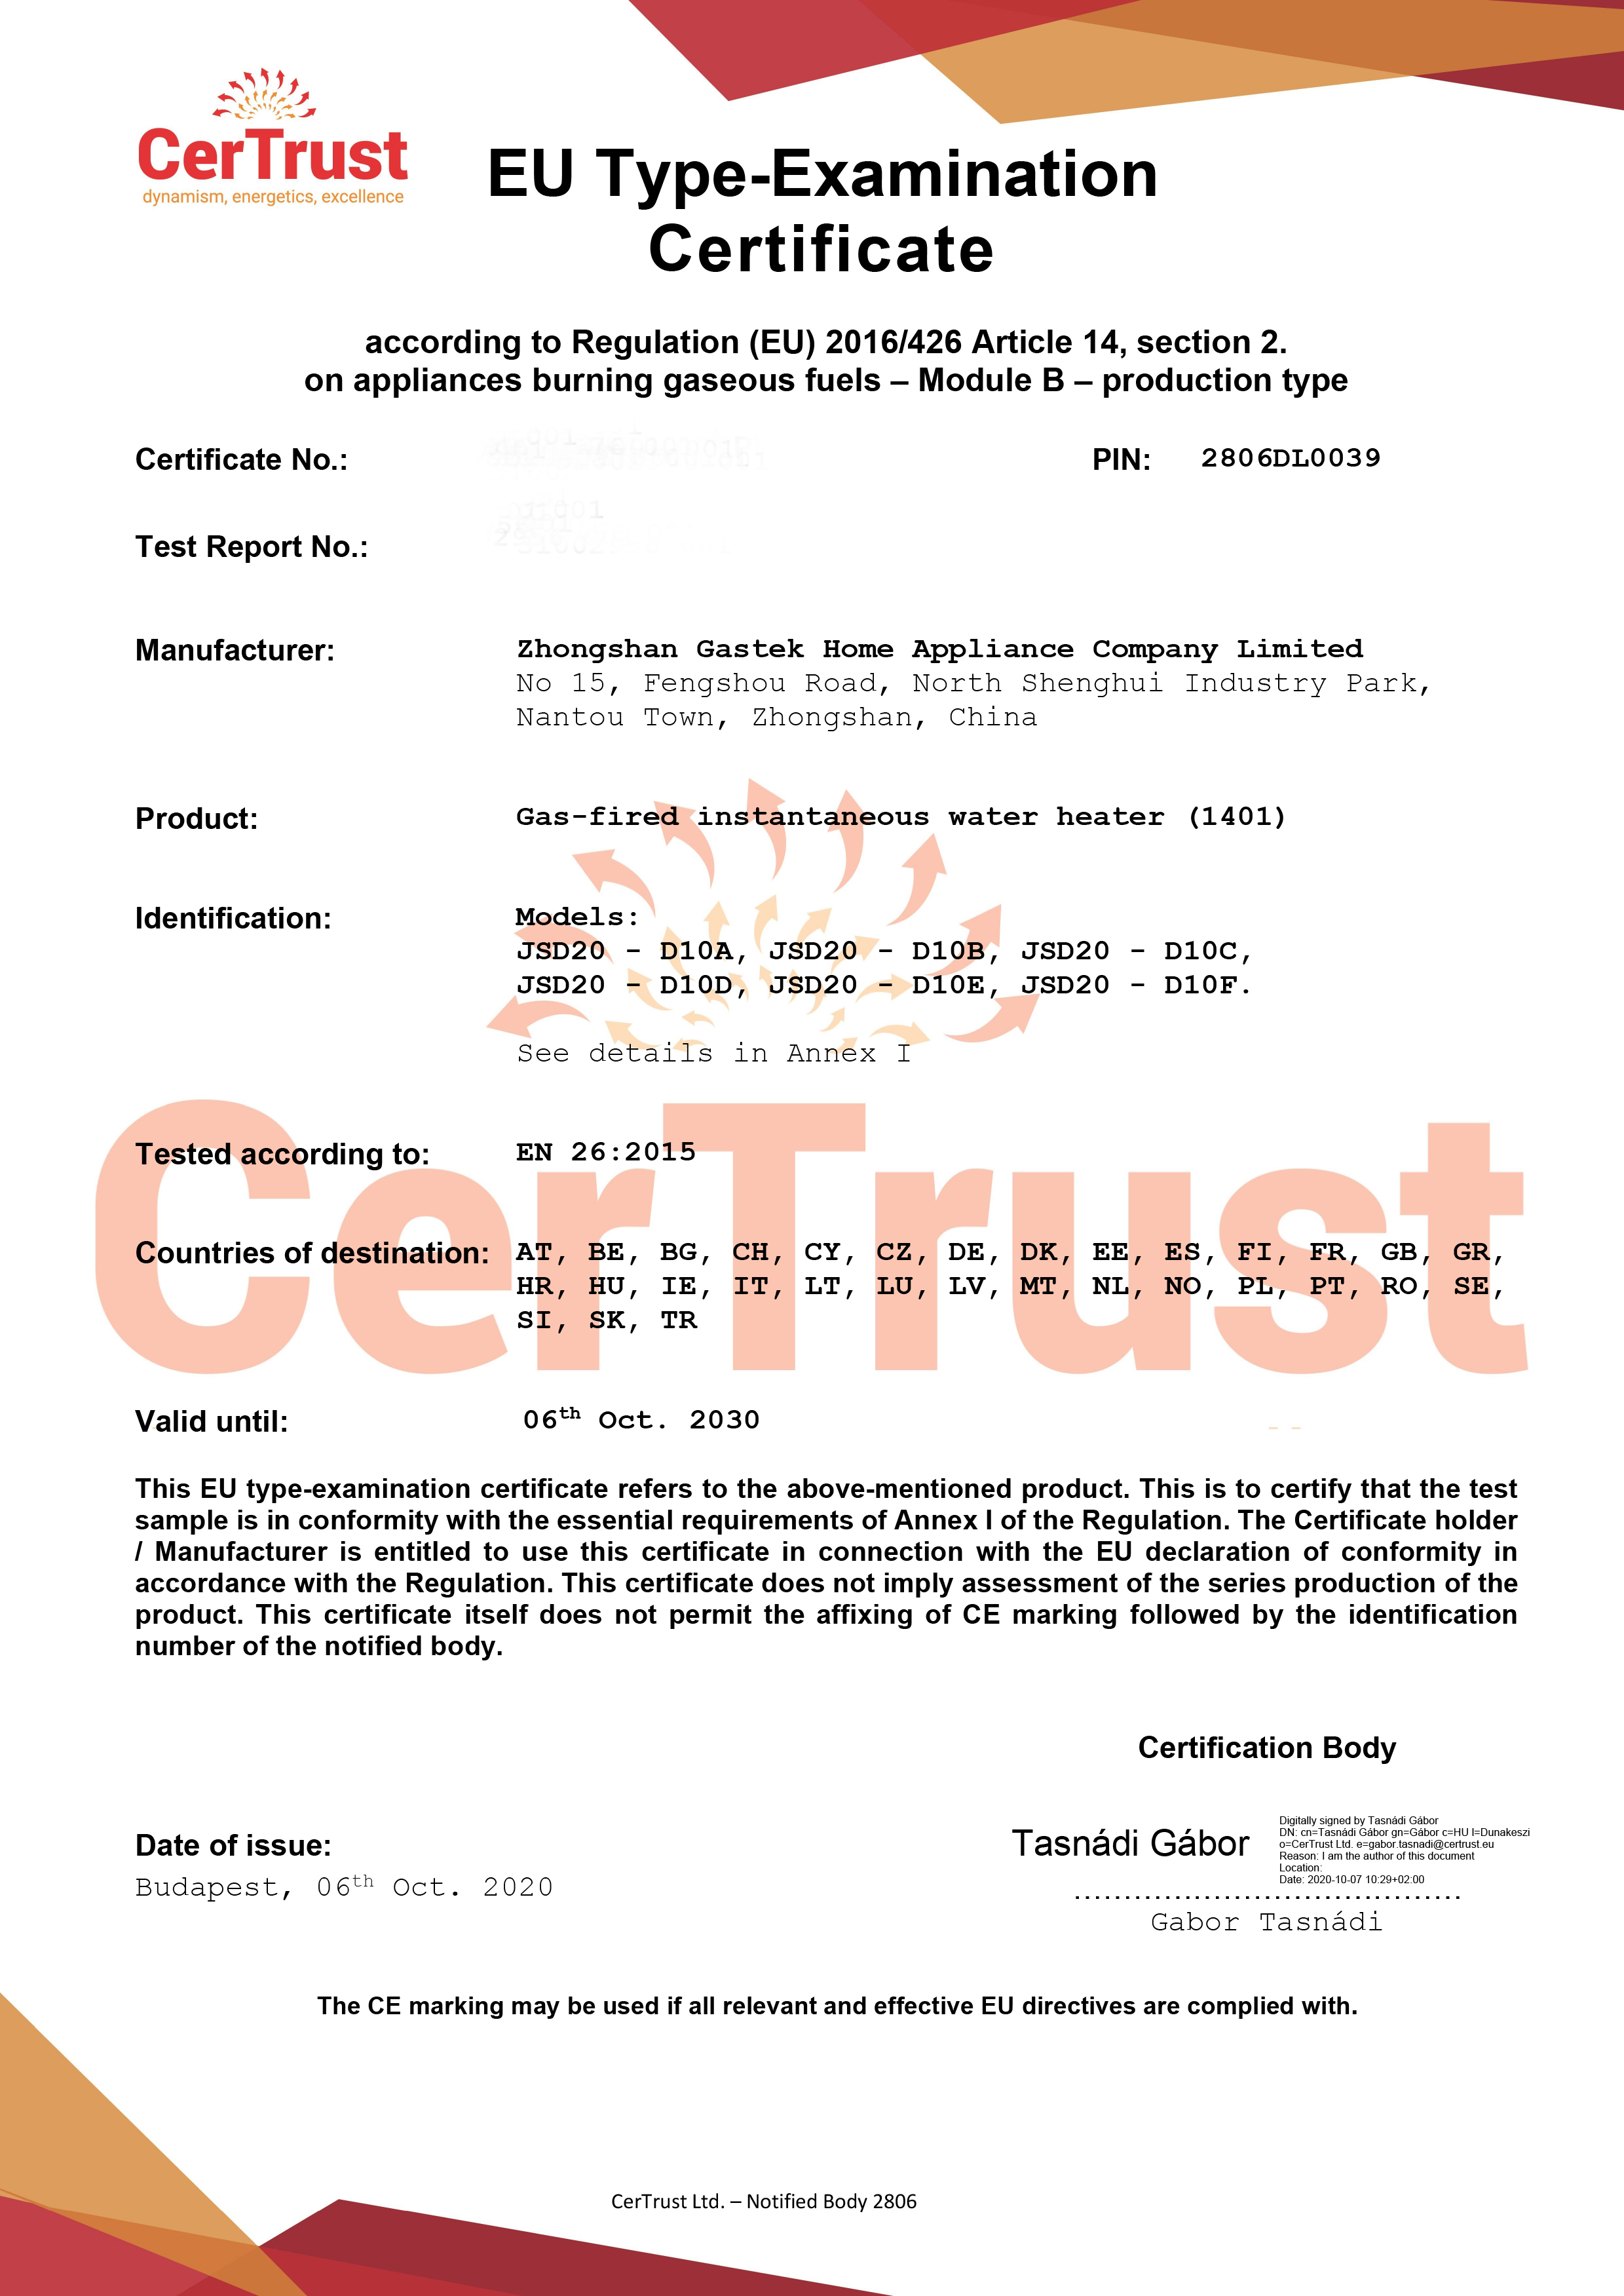 Gastek a obtenu le certificat CE de chauffe-eau à gaz en octobre